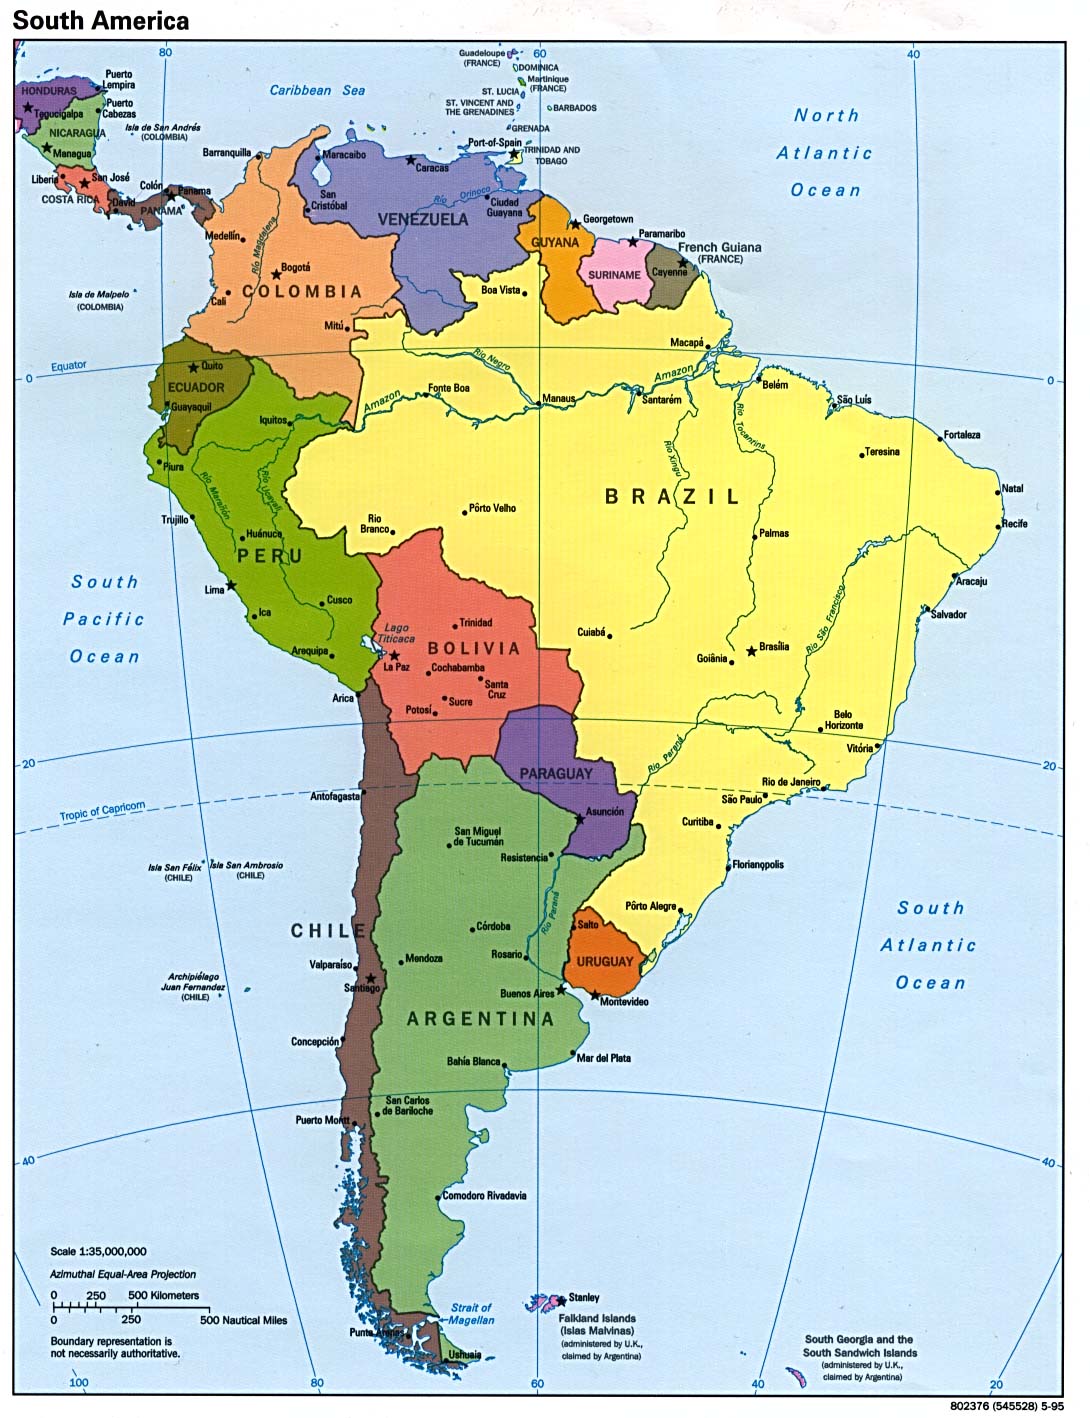 MAPA COMPLETO DE SUR AMERICA | La Pagina del Apellido Erauscain